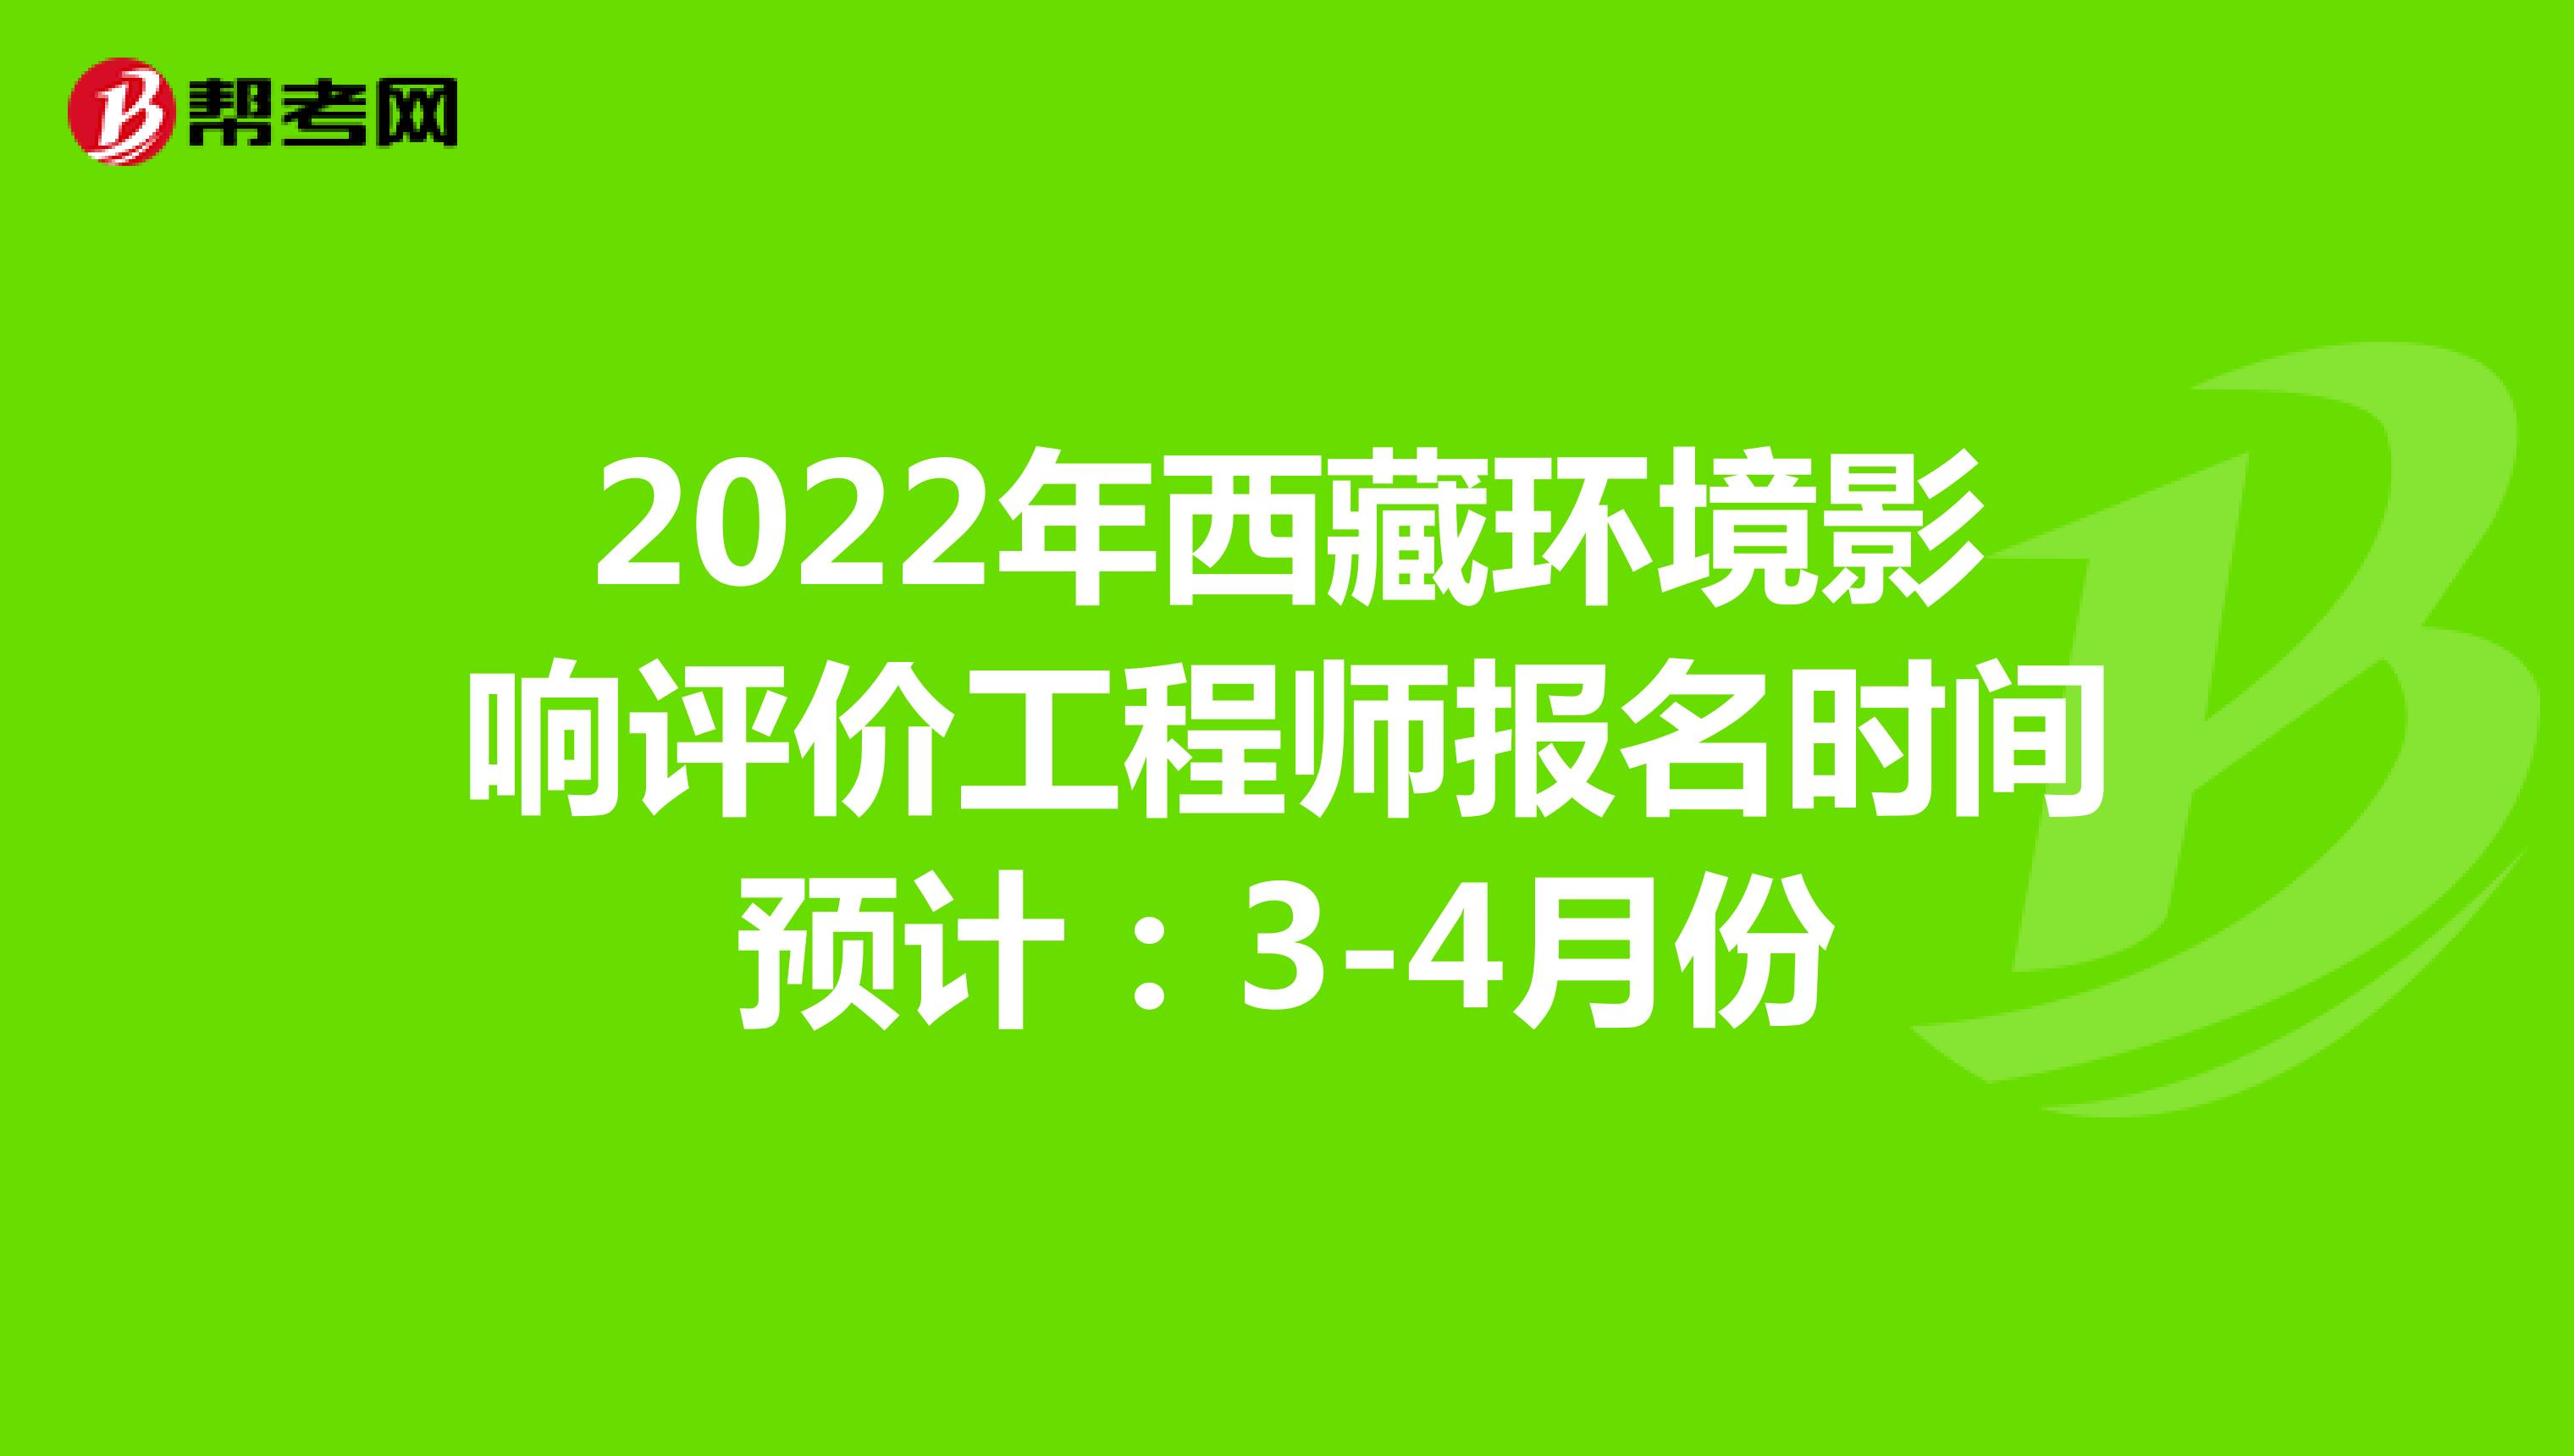 2022年西藏环境影响评价工程师报名时间预计：3-4月份